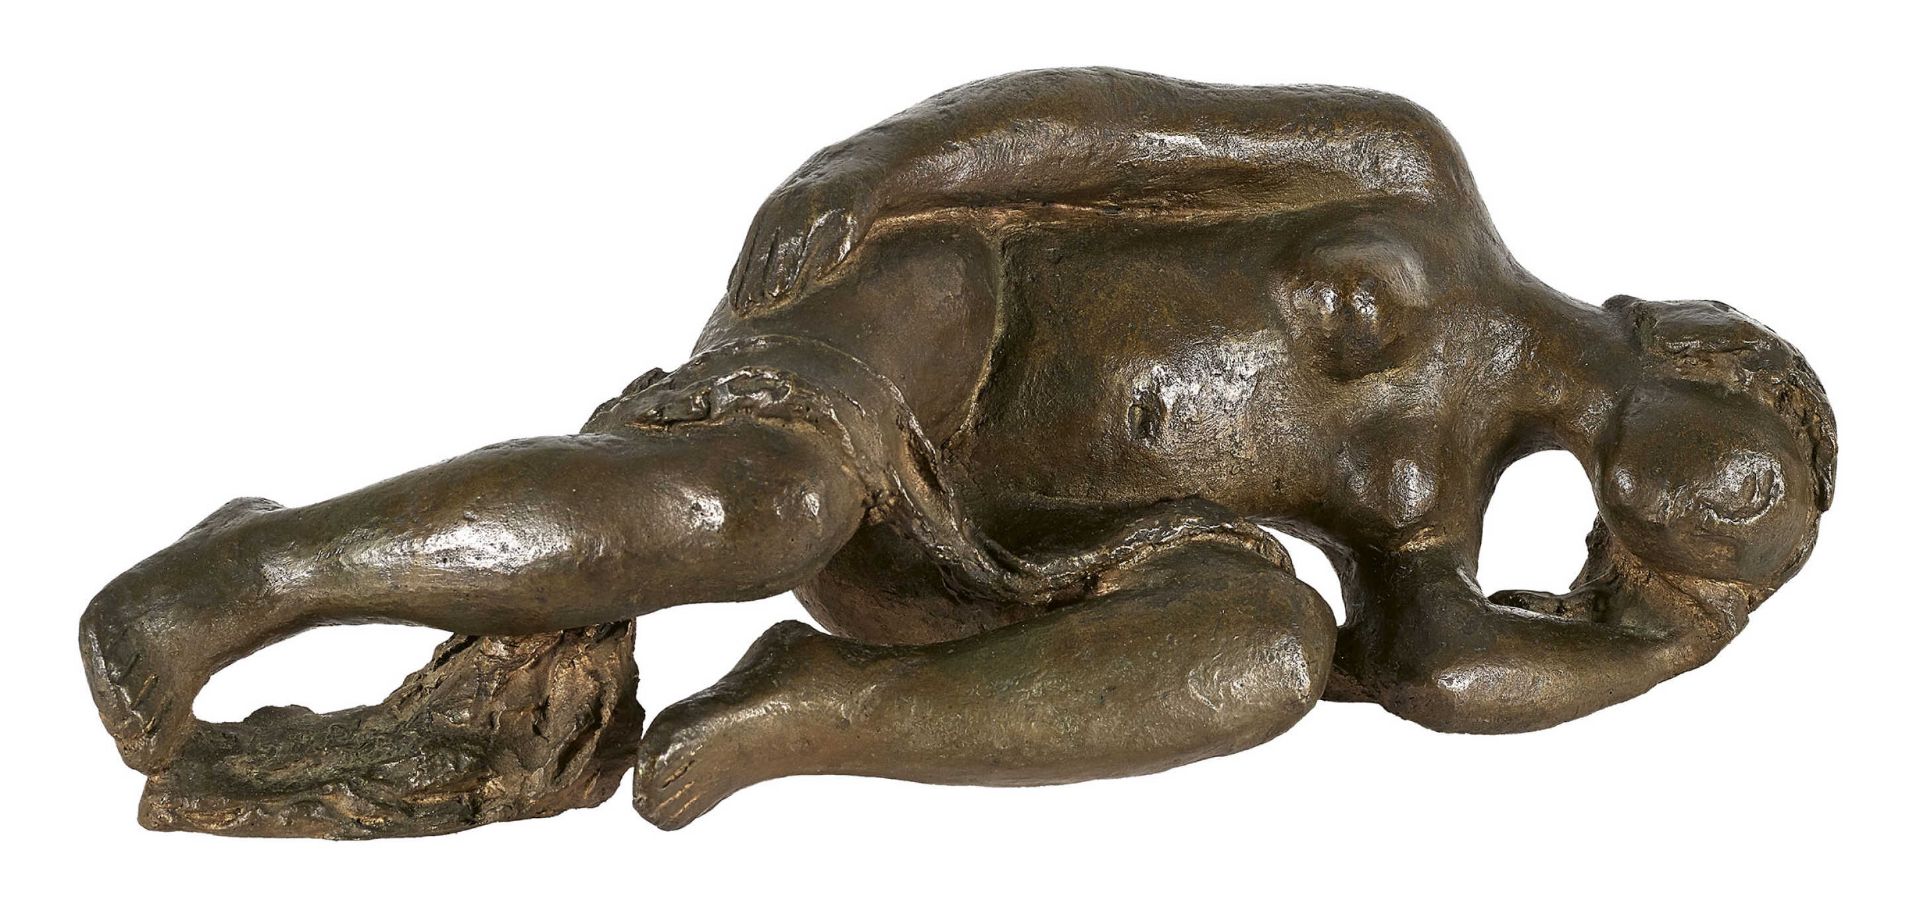 PIGUET, GUSTAVEInterlaken 1909 - 1976 BernLiegende mit Tuch.Bronze, patiniert,a. Tuch sig. "G.